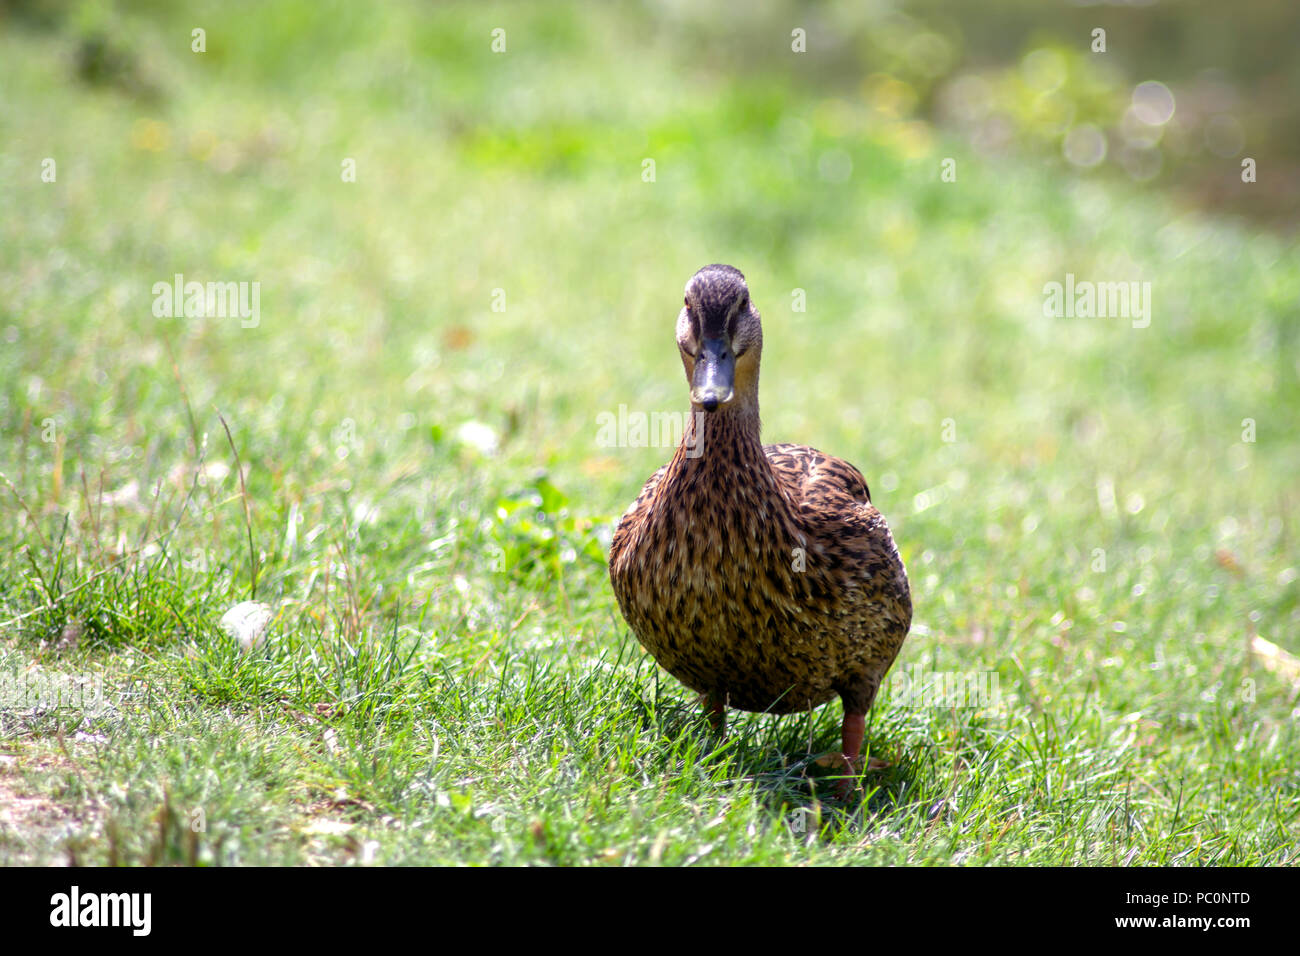 DE - Baden-Wurttemberg : The walking duck Stock Photo